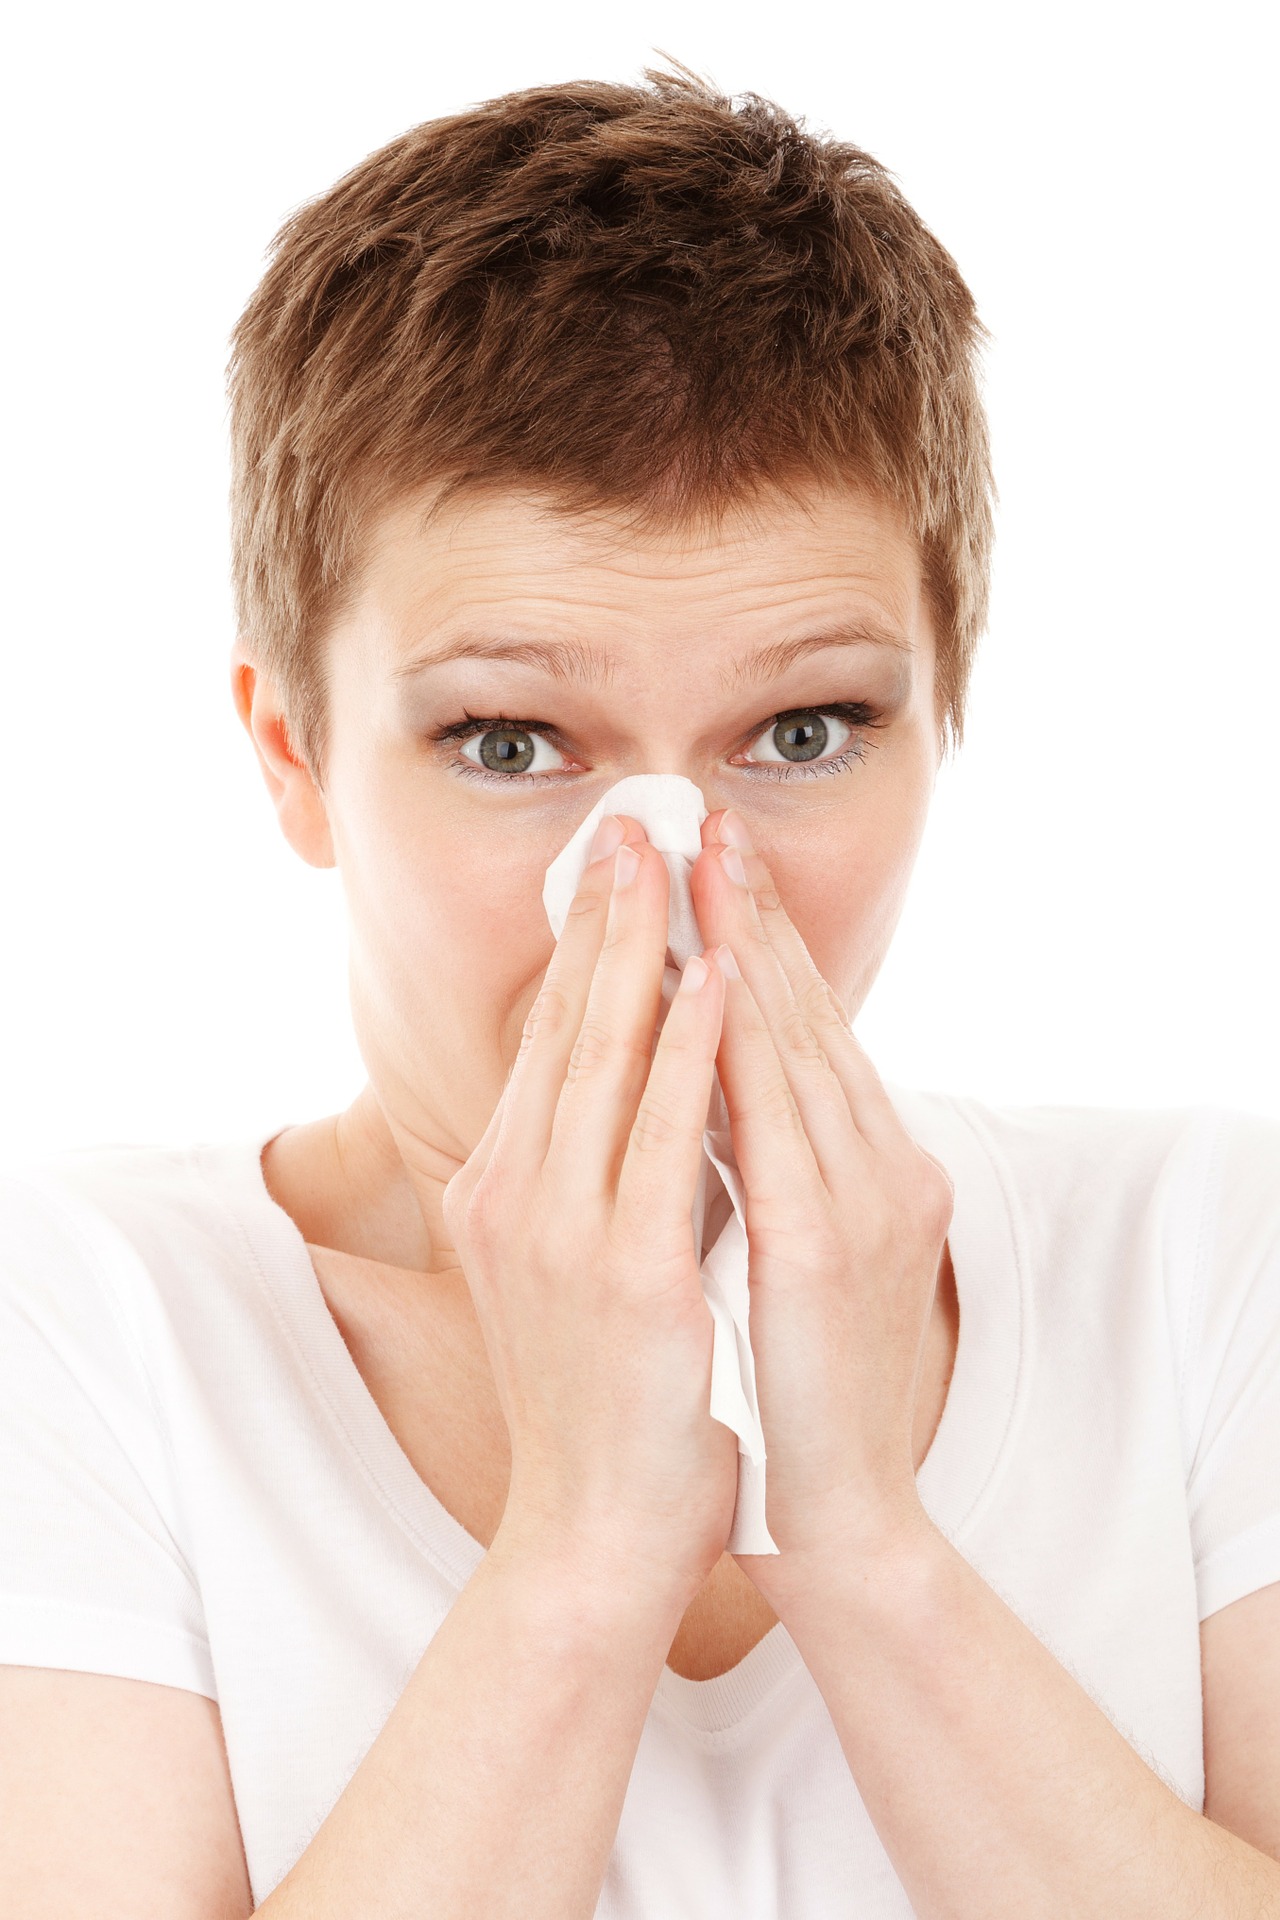 Náthás tünetei vannak, de nem megfázás és nem is allergia?